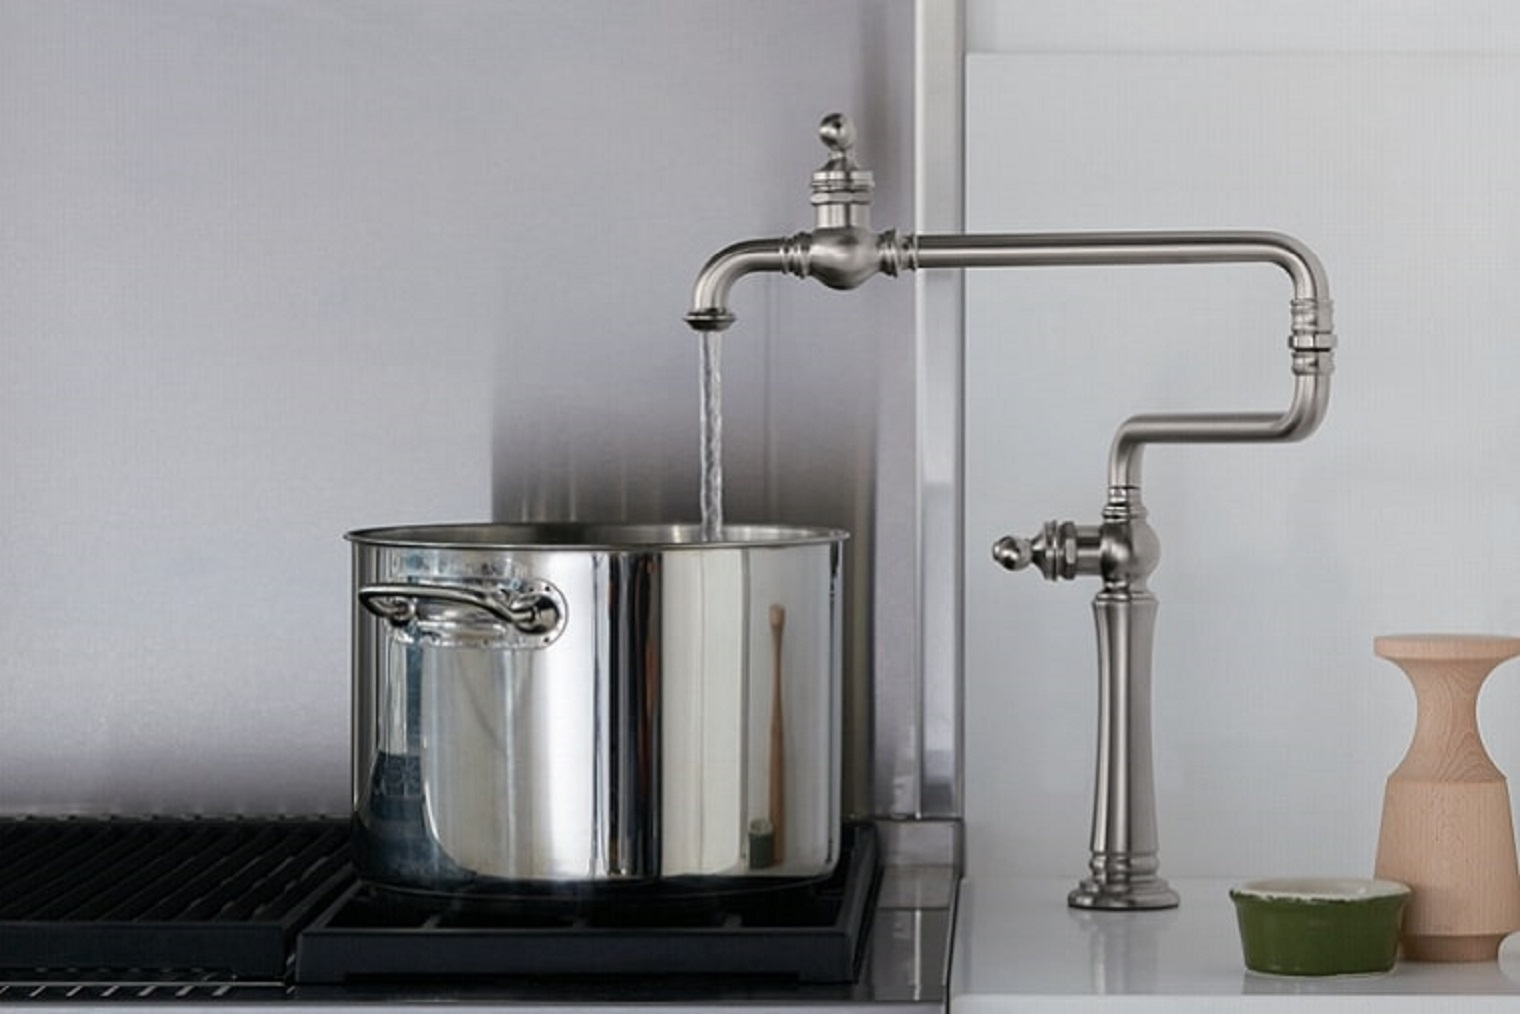 水まわりの利便性を向上させたい！キッチン用水栓の選び方とは？